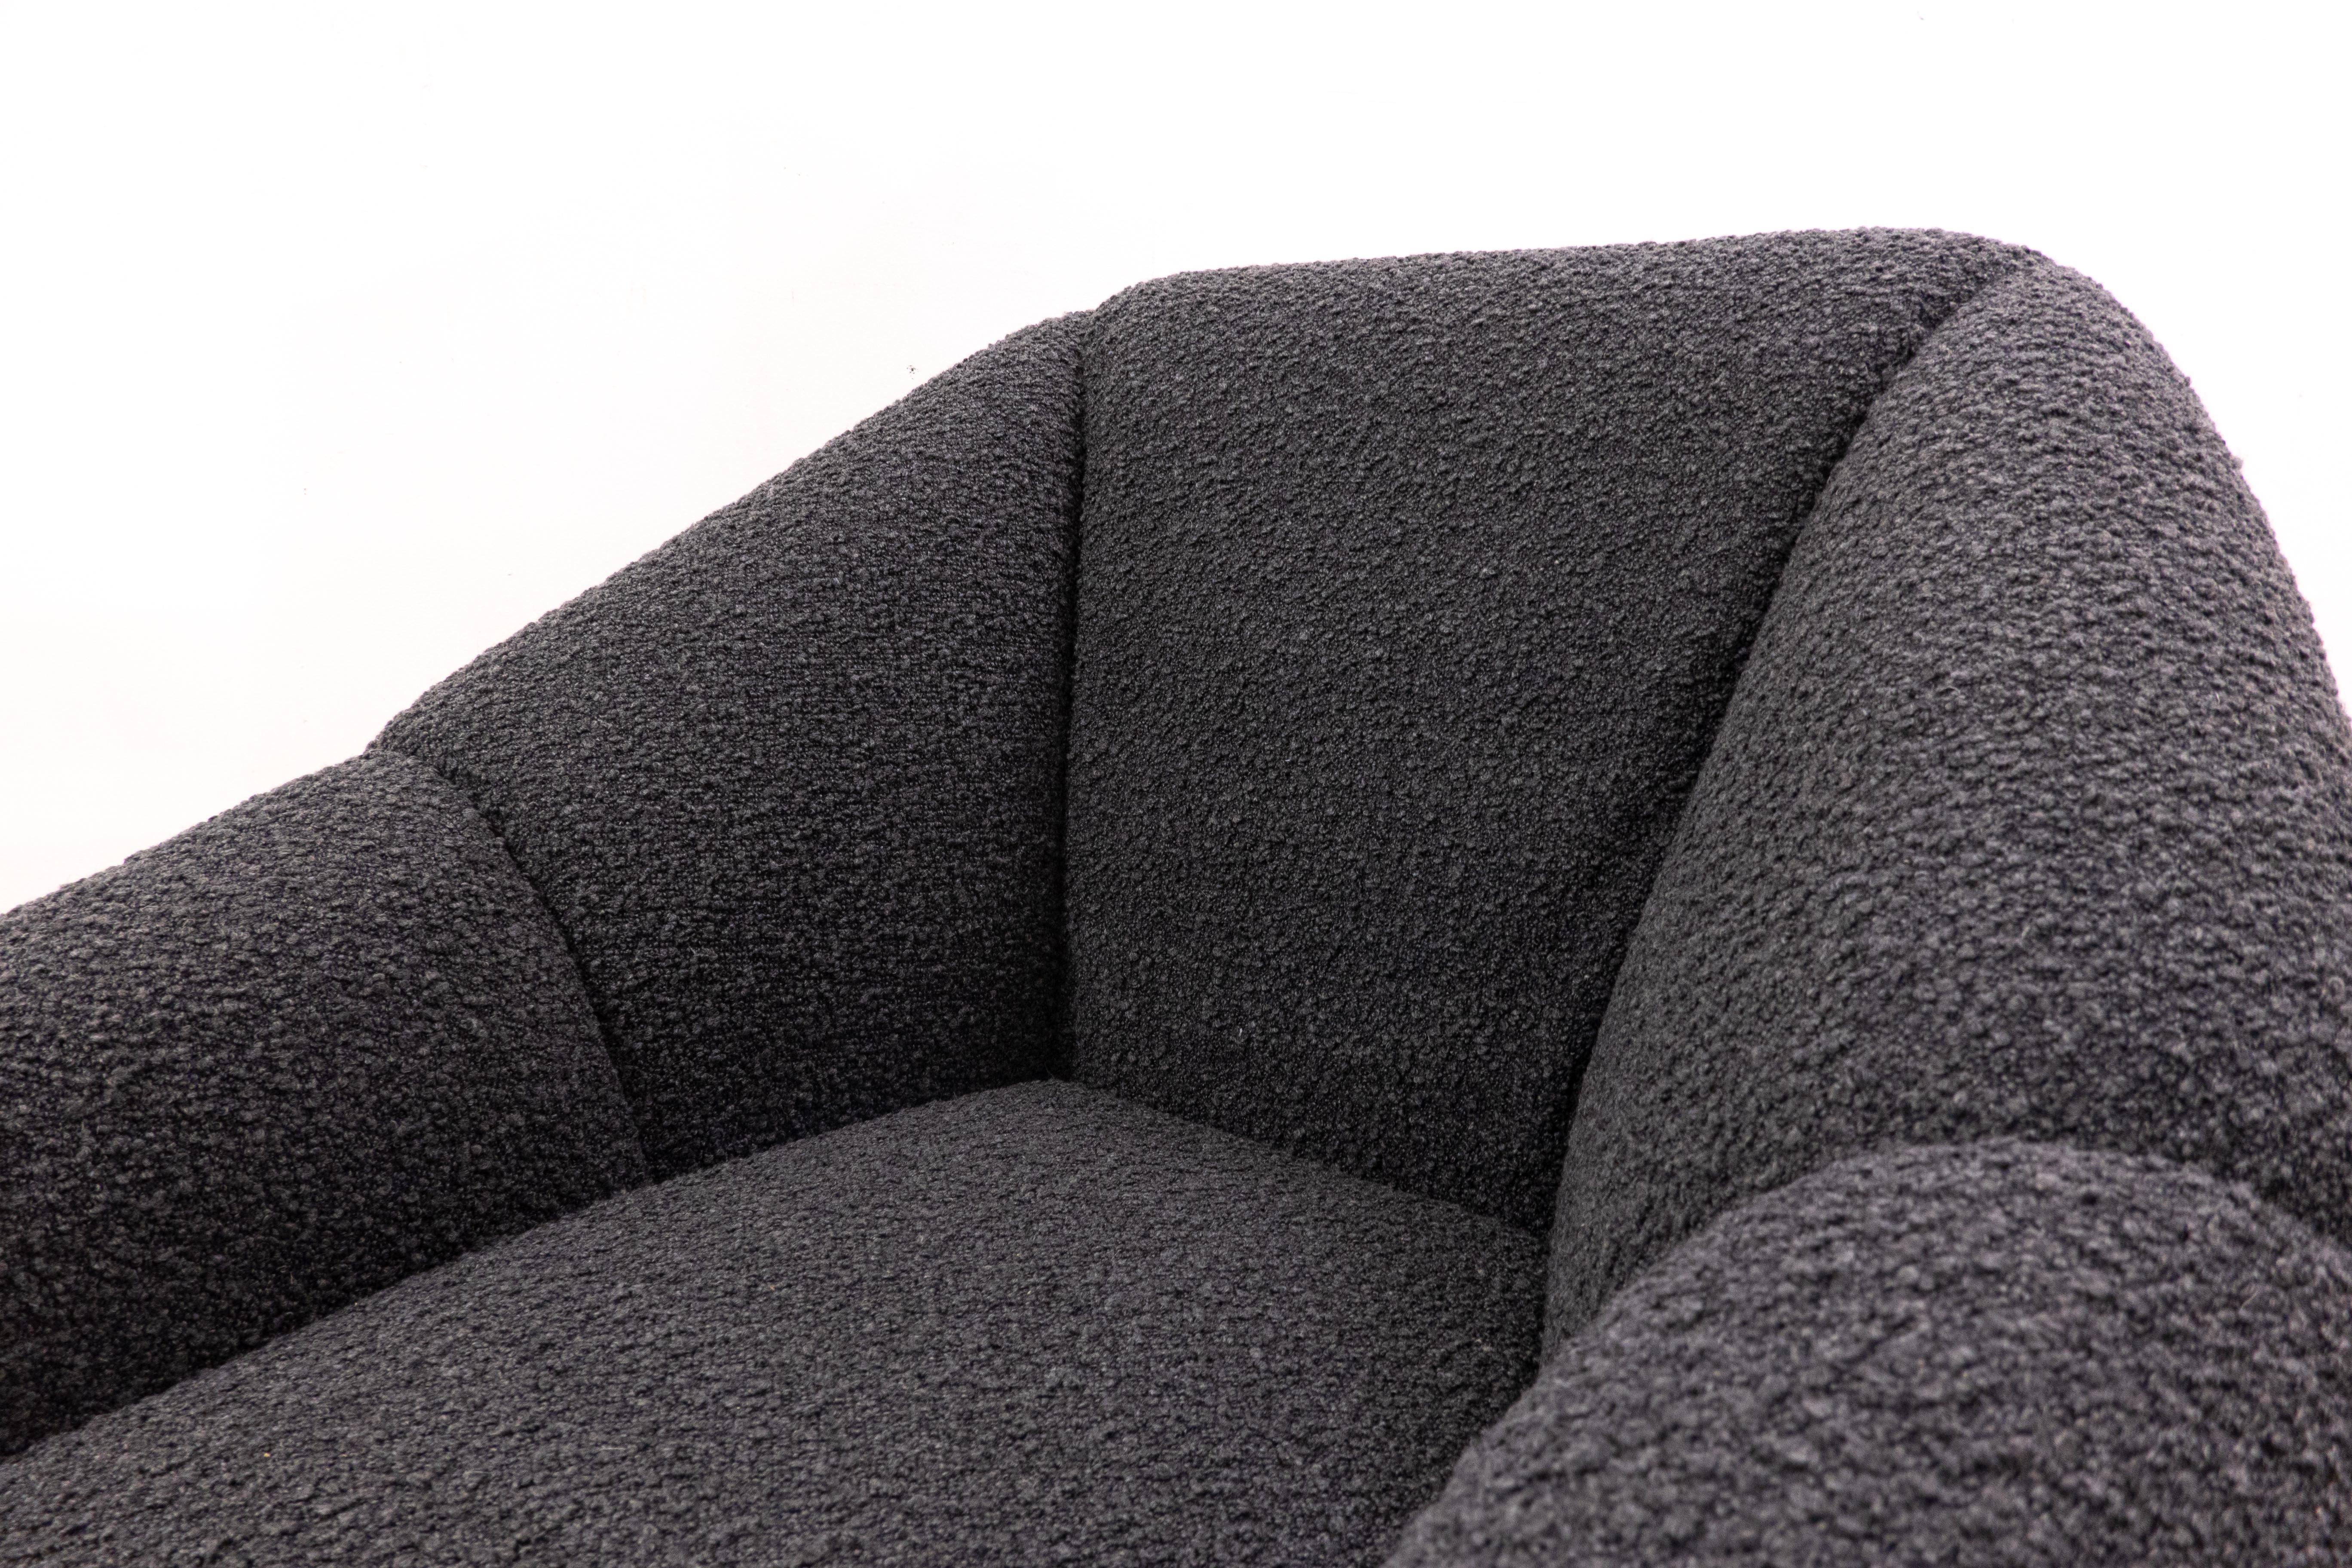 Mid-Century Modern Italian Armchair, 1950s -Black Bouclette Fabric  For Sale 1